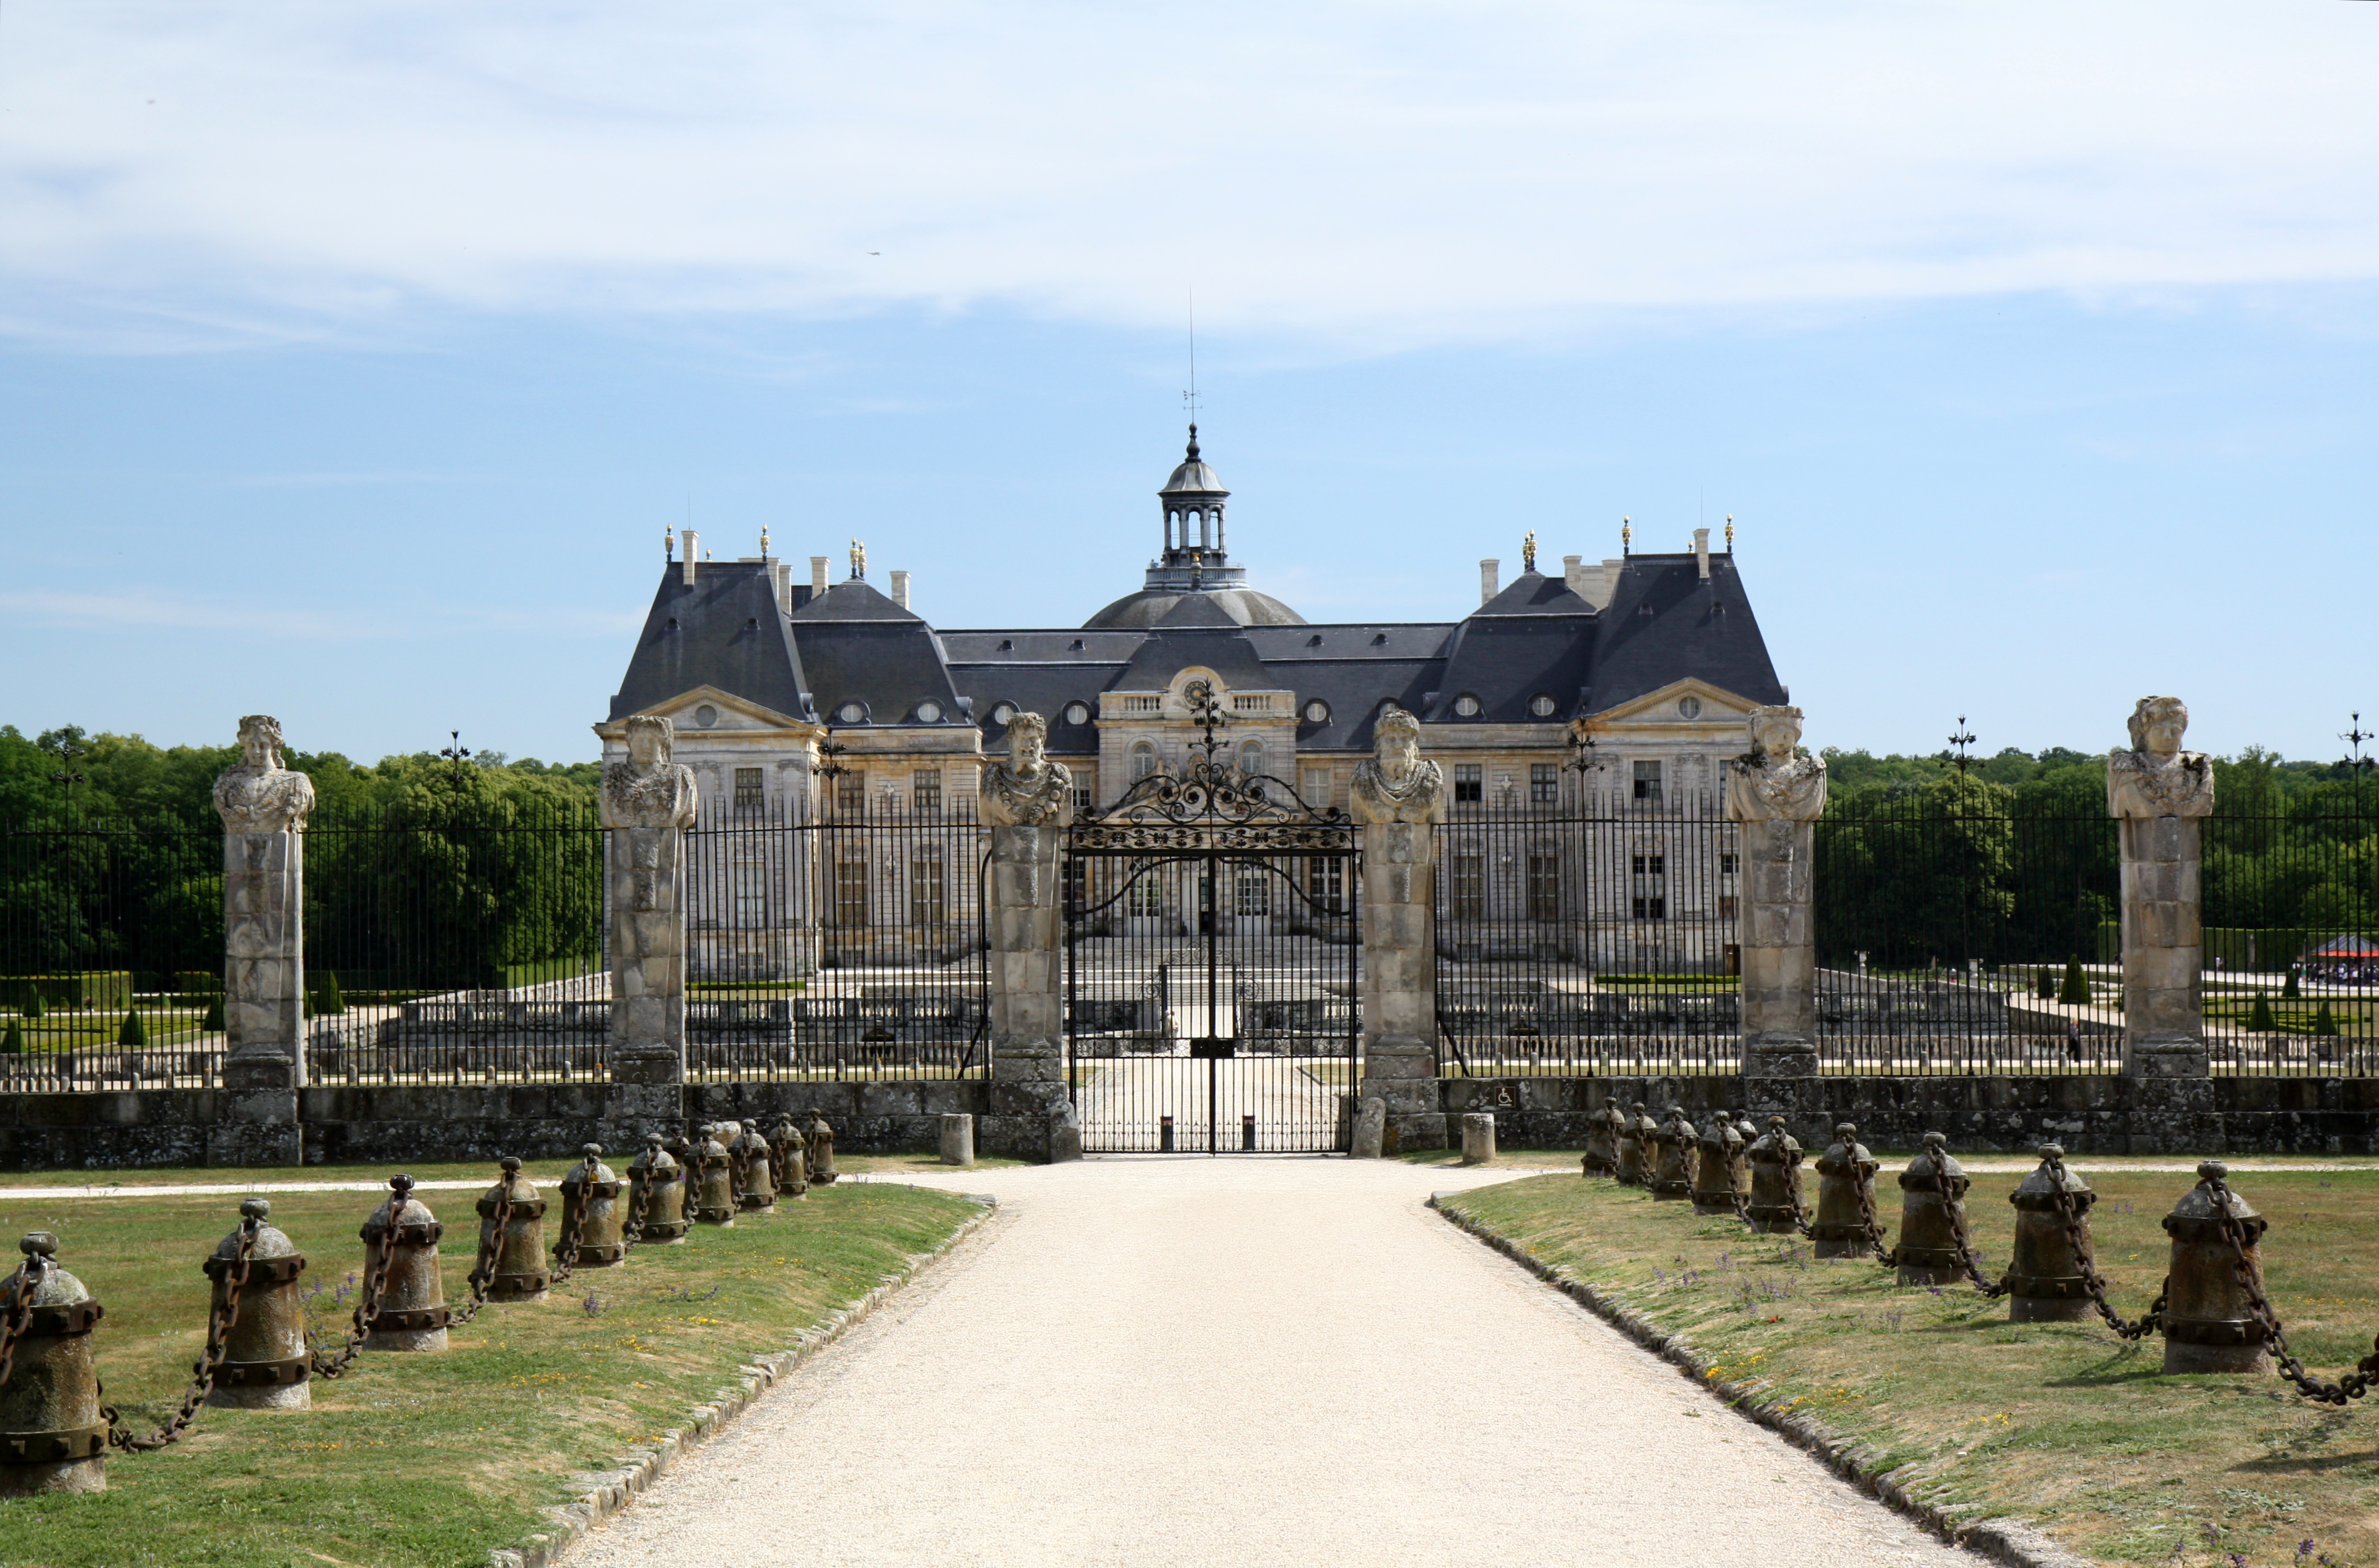 View of Estate Housea at Vaux le Vicomte